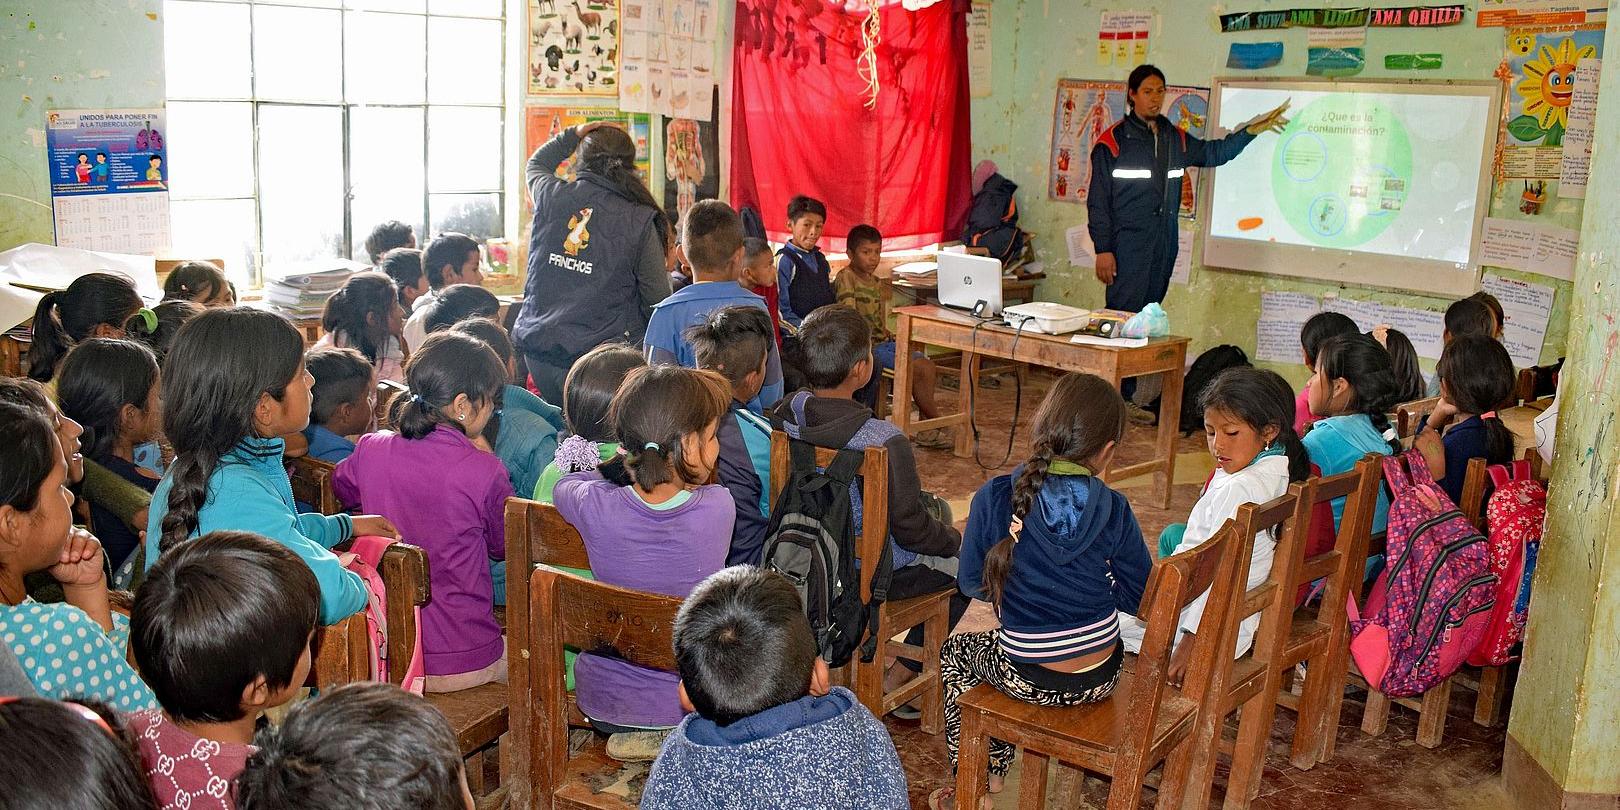 Eine Partnerorganisation der Bolivienpartnerschaft im Bistum Trier ist die Stiftung Solidarität und Freundschaft. Dort unterrichtet Osmar Salazar Fuentes Kinder in der Schule Villa Flores in Tomina im Erzbistum Sucre. Weltkirchliche Solidarität wird schon seit 60 Jahren in der Bolivienpartnerschaft gefördert.